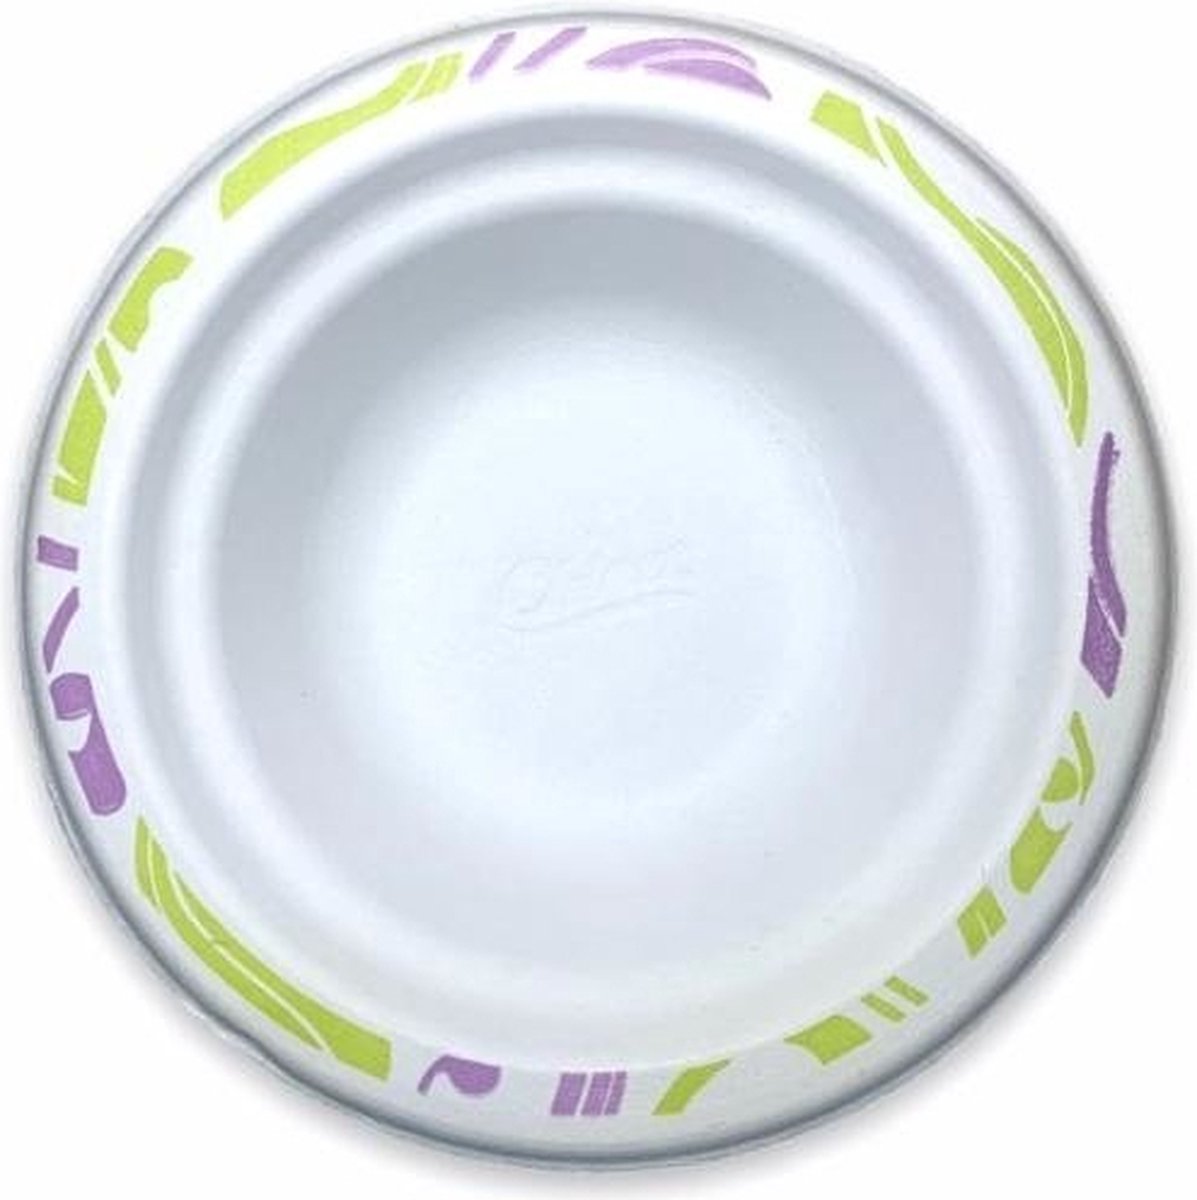 100 Stuks x Witte Gegoten Vezel Borden 14 cm - Chinet - Feest - Verjaardag - BBQ borden - bordjes - feest bordjes - wegwerp bordjes - Biologisch afbreekbaar/composteerbaar - Duurzaam - Milieuvriendelijke - soup - soep borden - soep bord